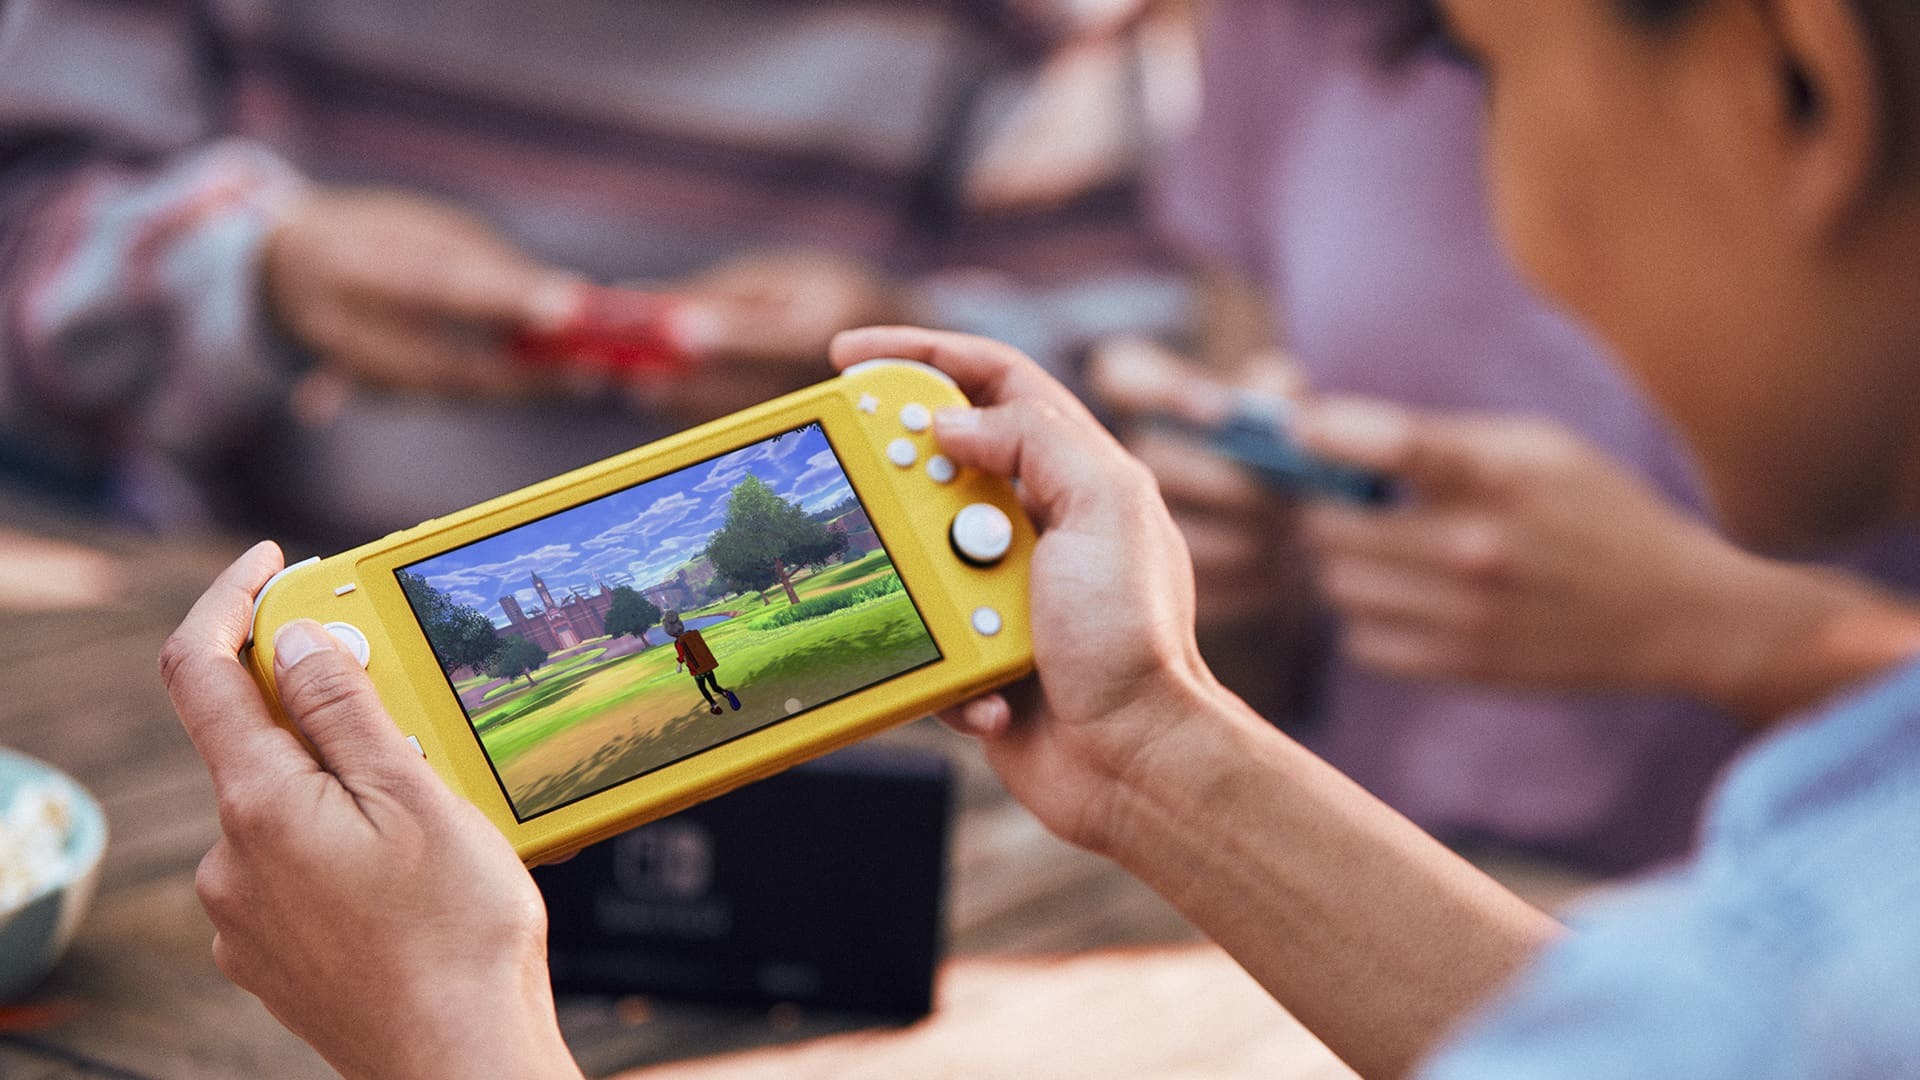 Nintendo bất ngờ ra
mắt phiên bản giá rẻ của Nintendo Switch với giá chỉ 4.6
triệu